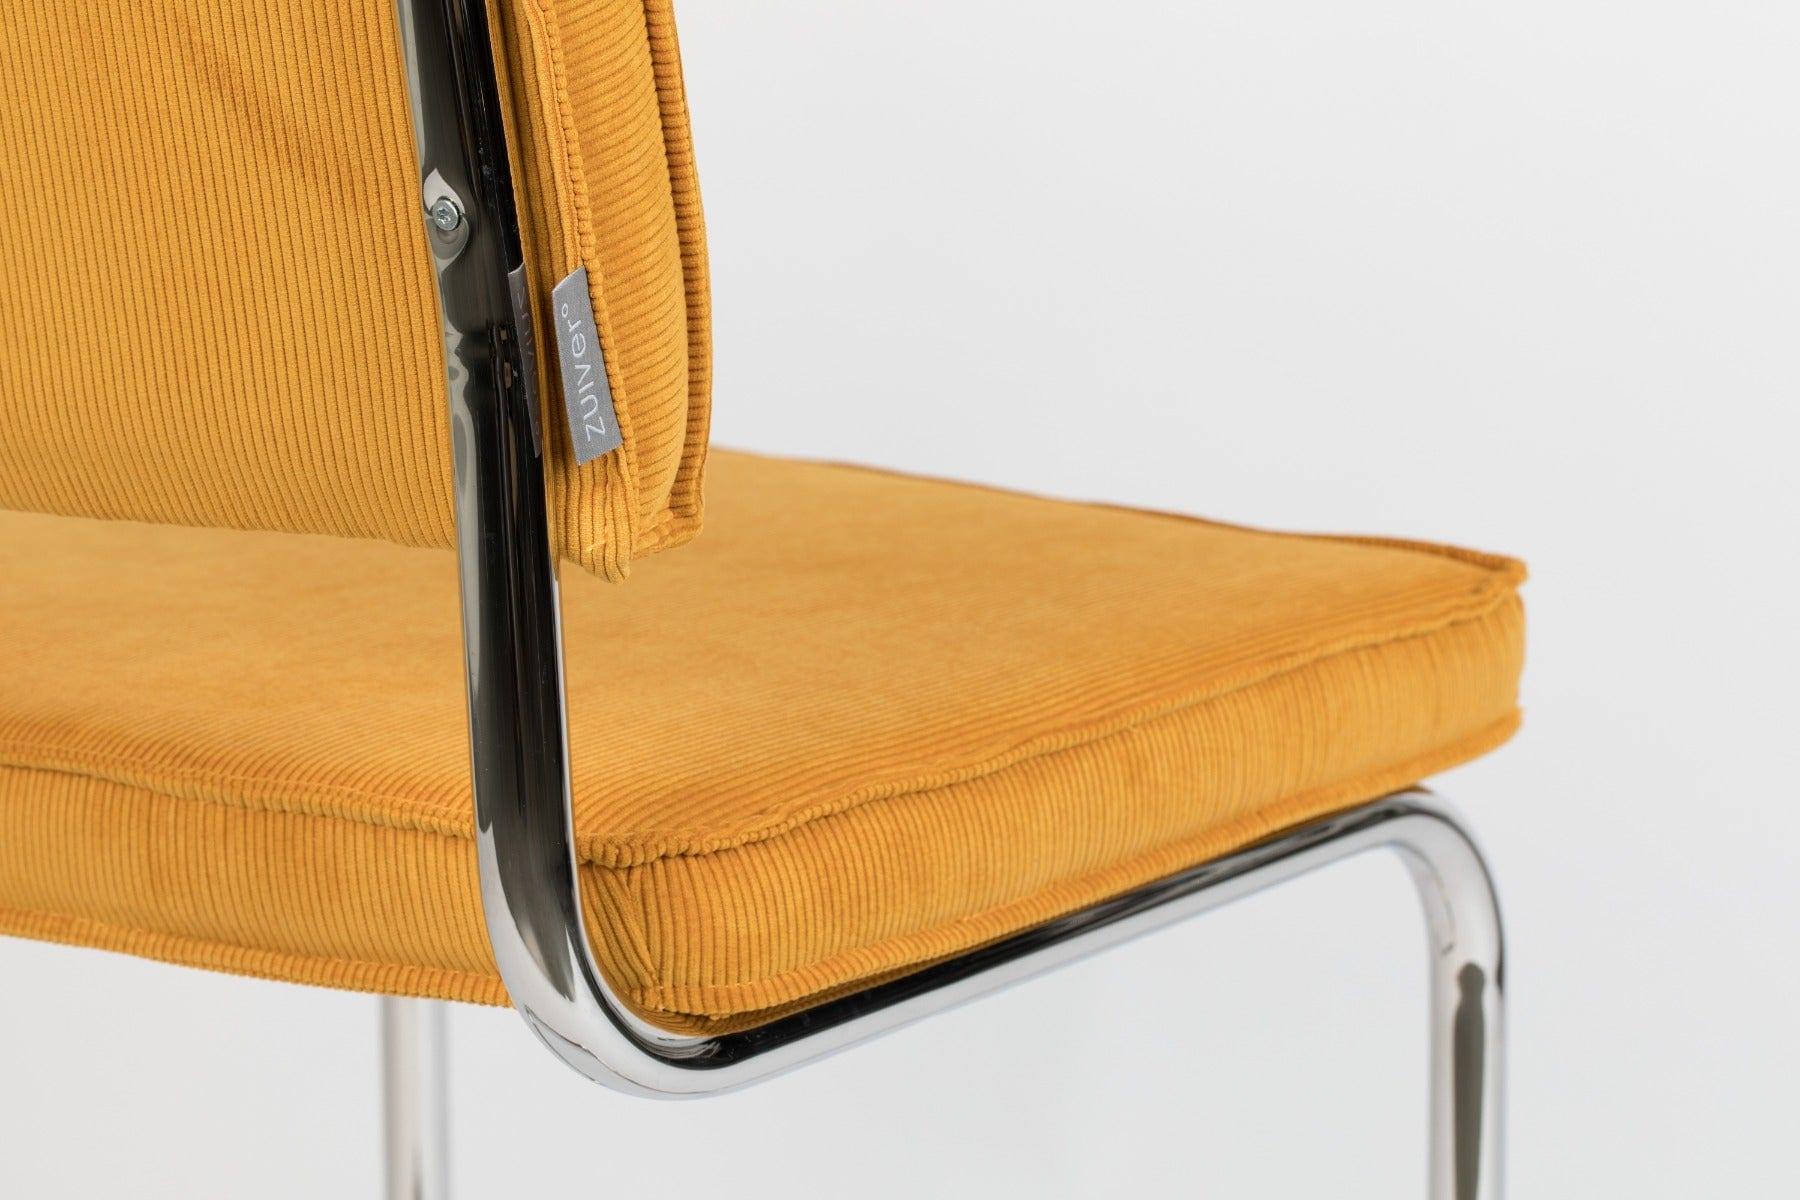 Krzesło RIDGE RIB żółty, Zuiver, Eye on Design